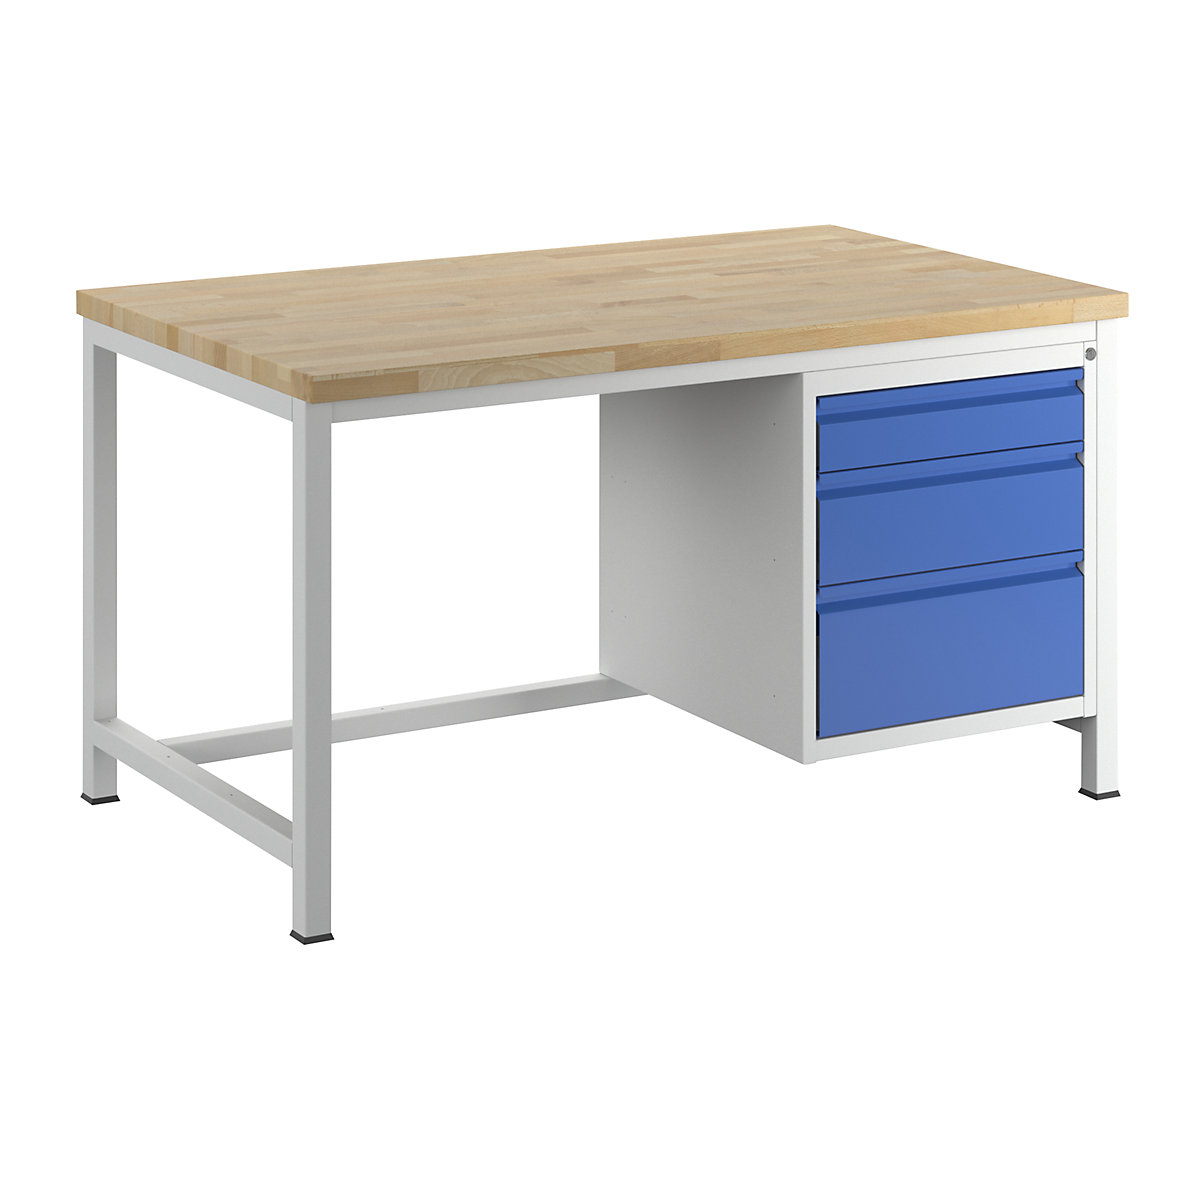 Stół warsztatowy, konstrukcja ramowa – RAU, 3 szuflady rozmiaru L, wys. po 1 x 120/180/240 mm, głęb. 900 mm, szer. 1500 mm-10